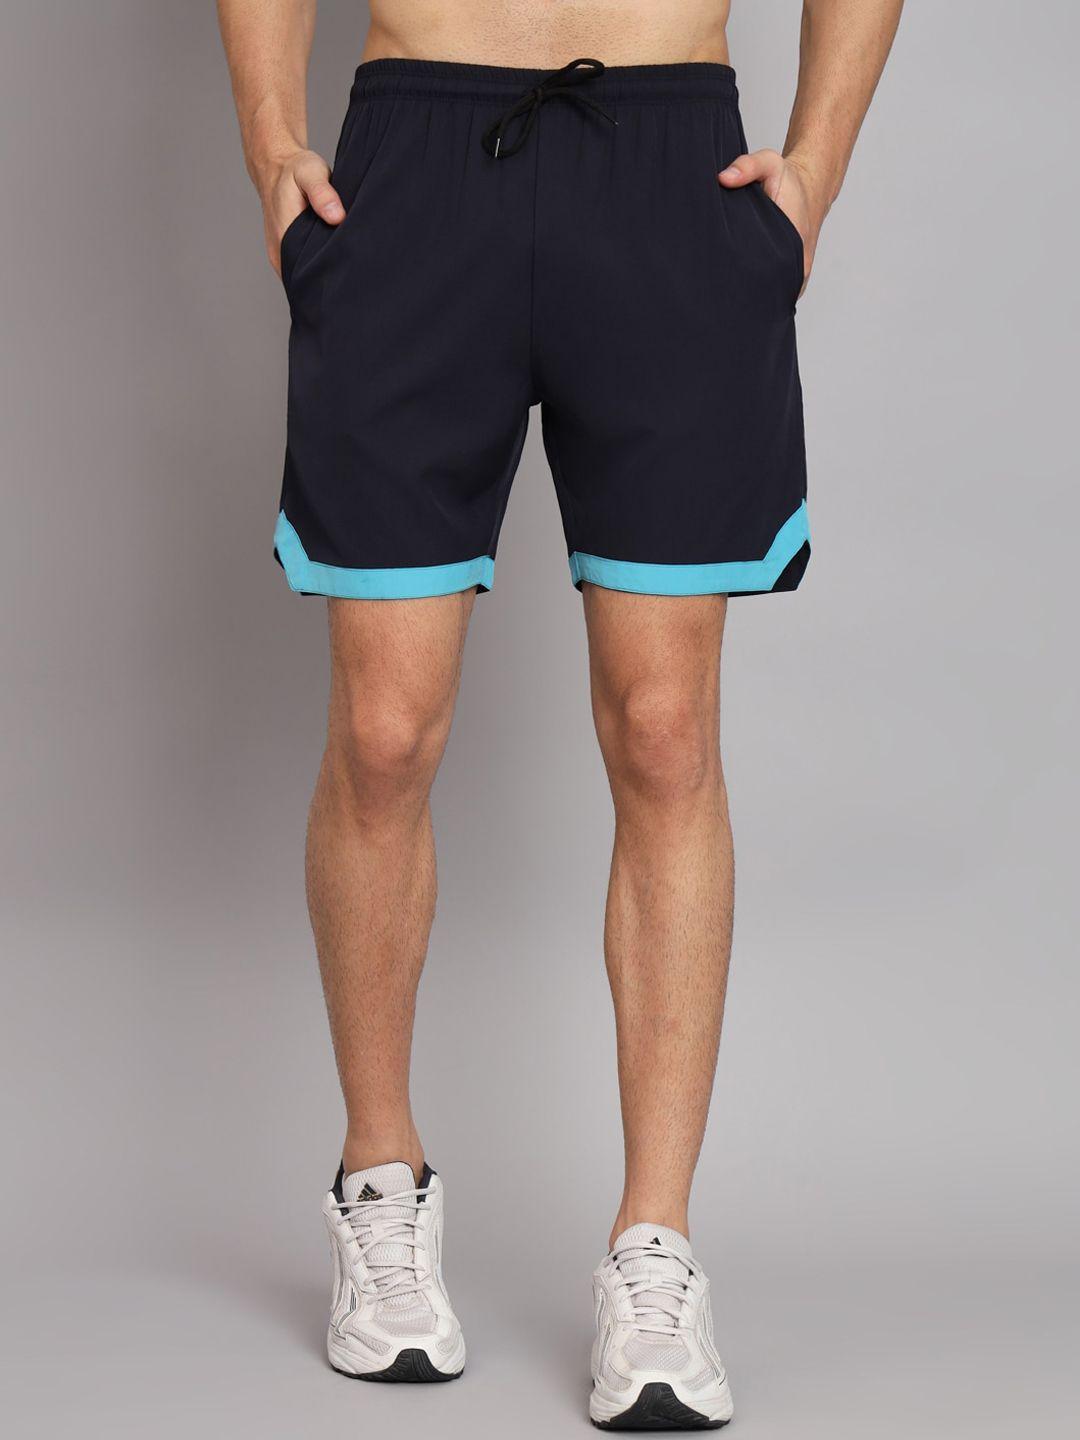 glito men navy blue training or gym sports shorts